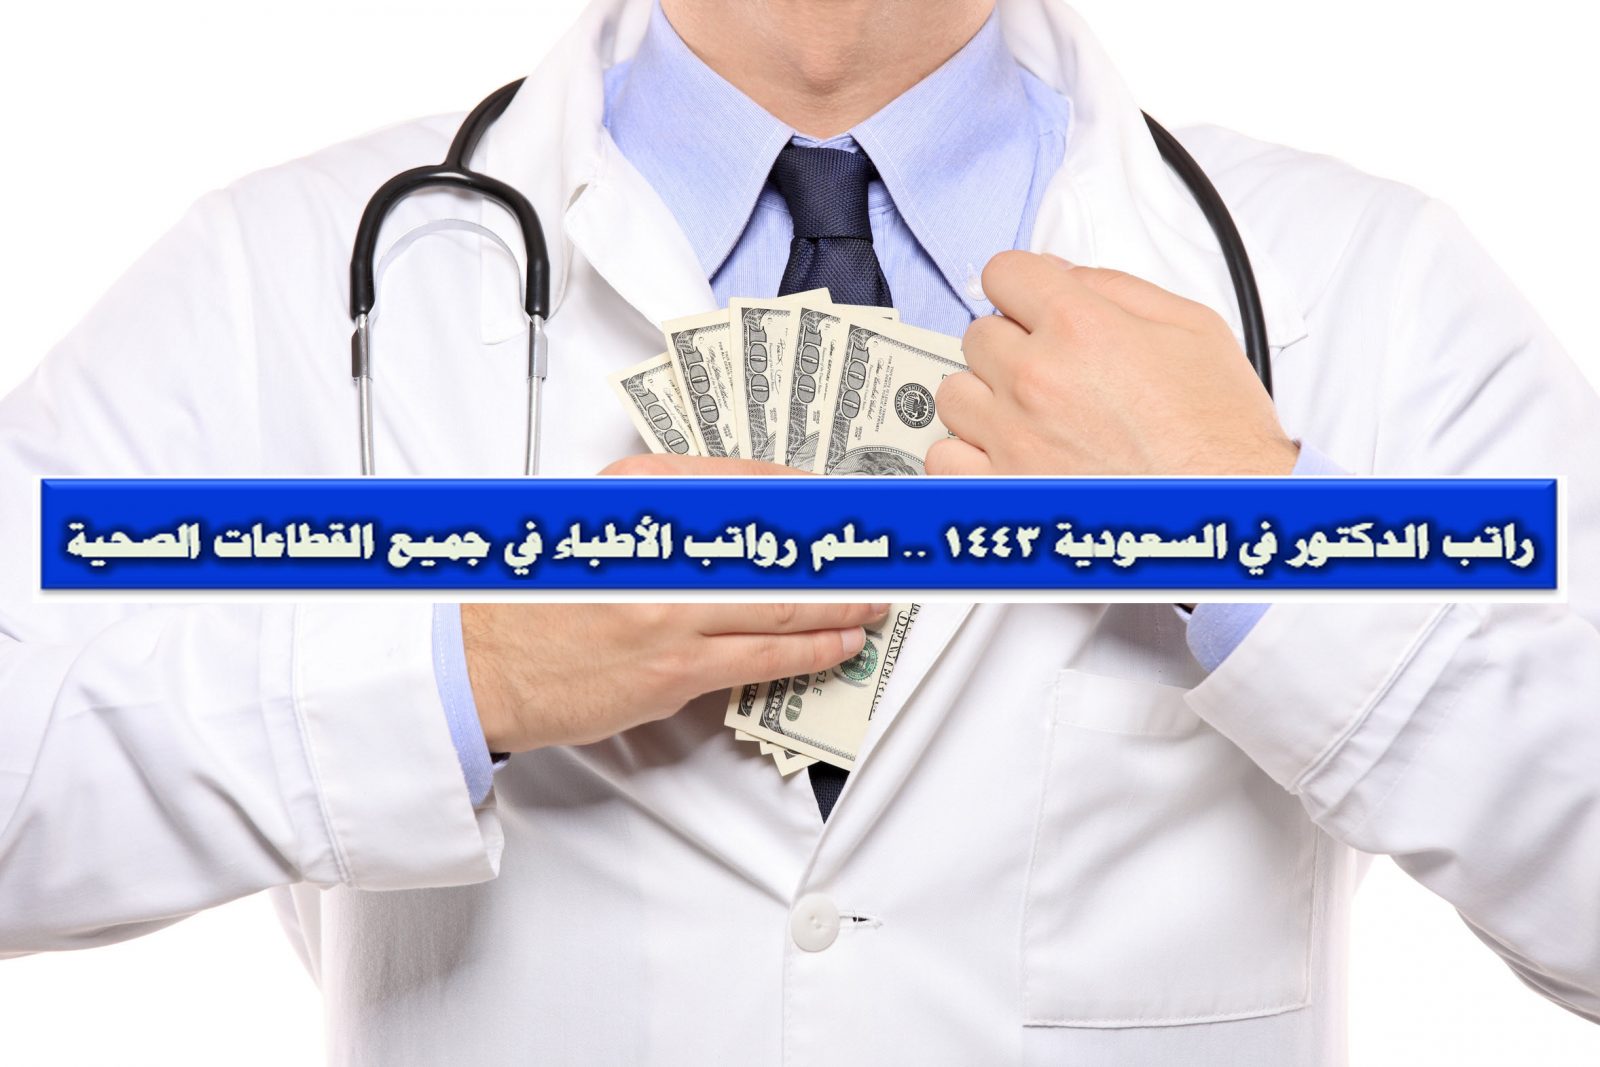 سلم رواتب الاطباء في السعودية